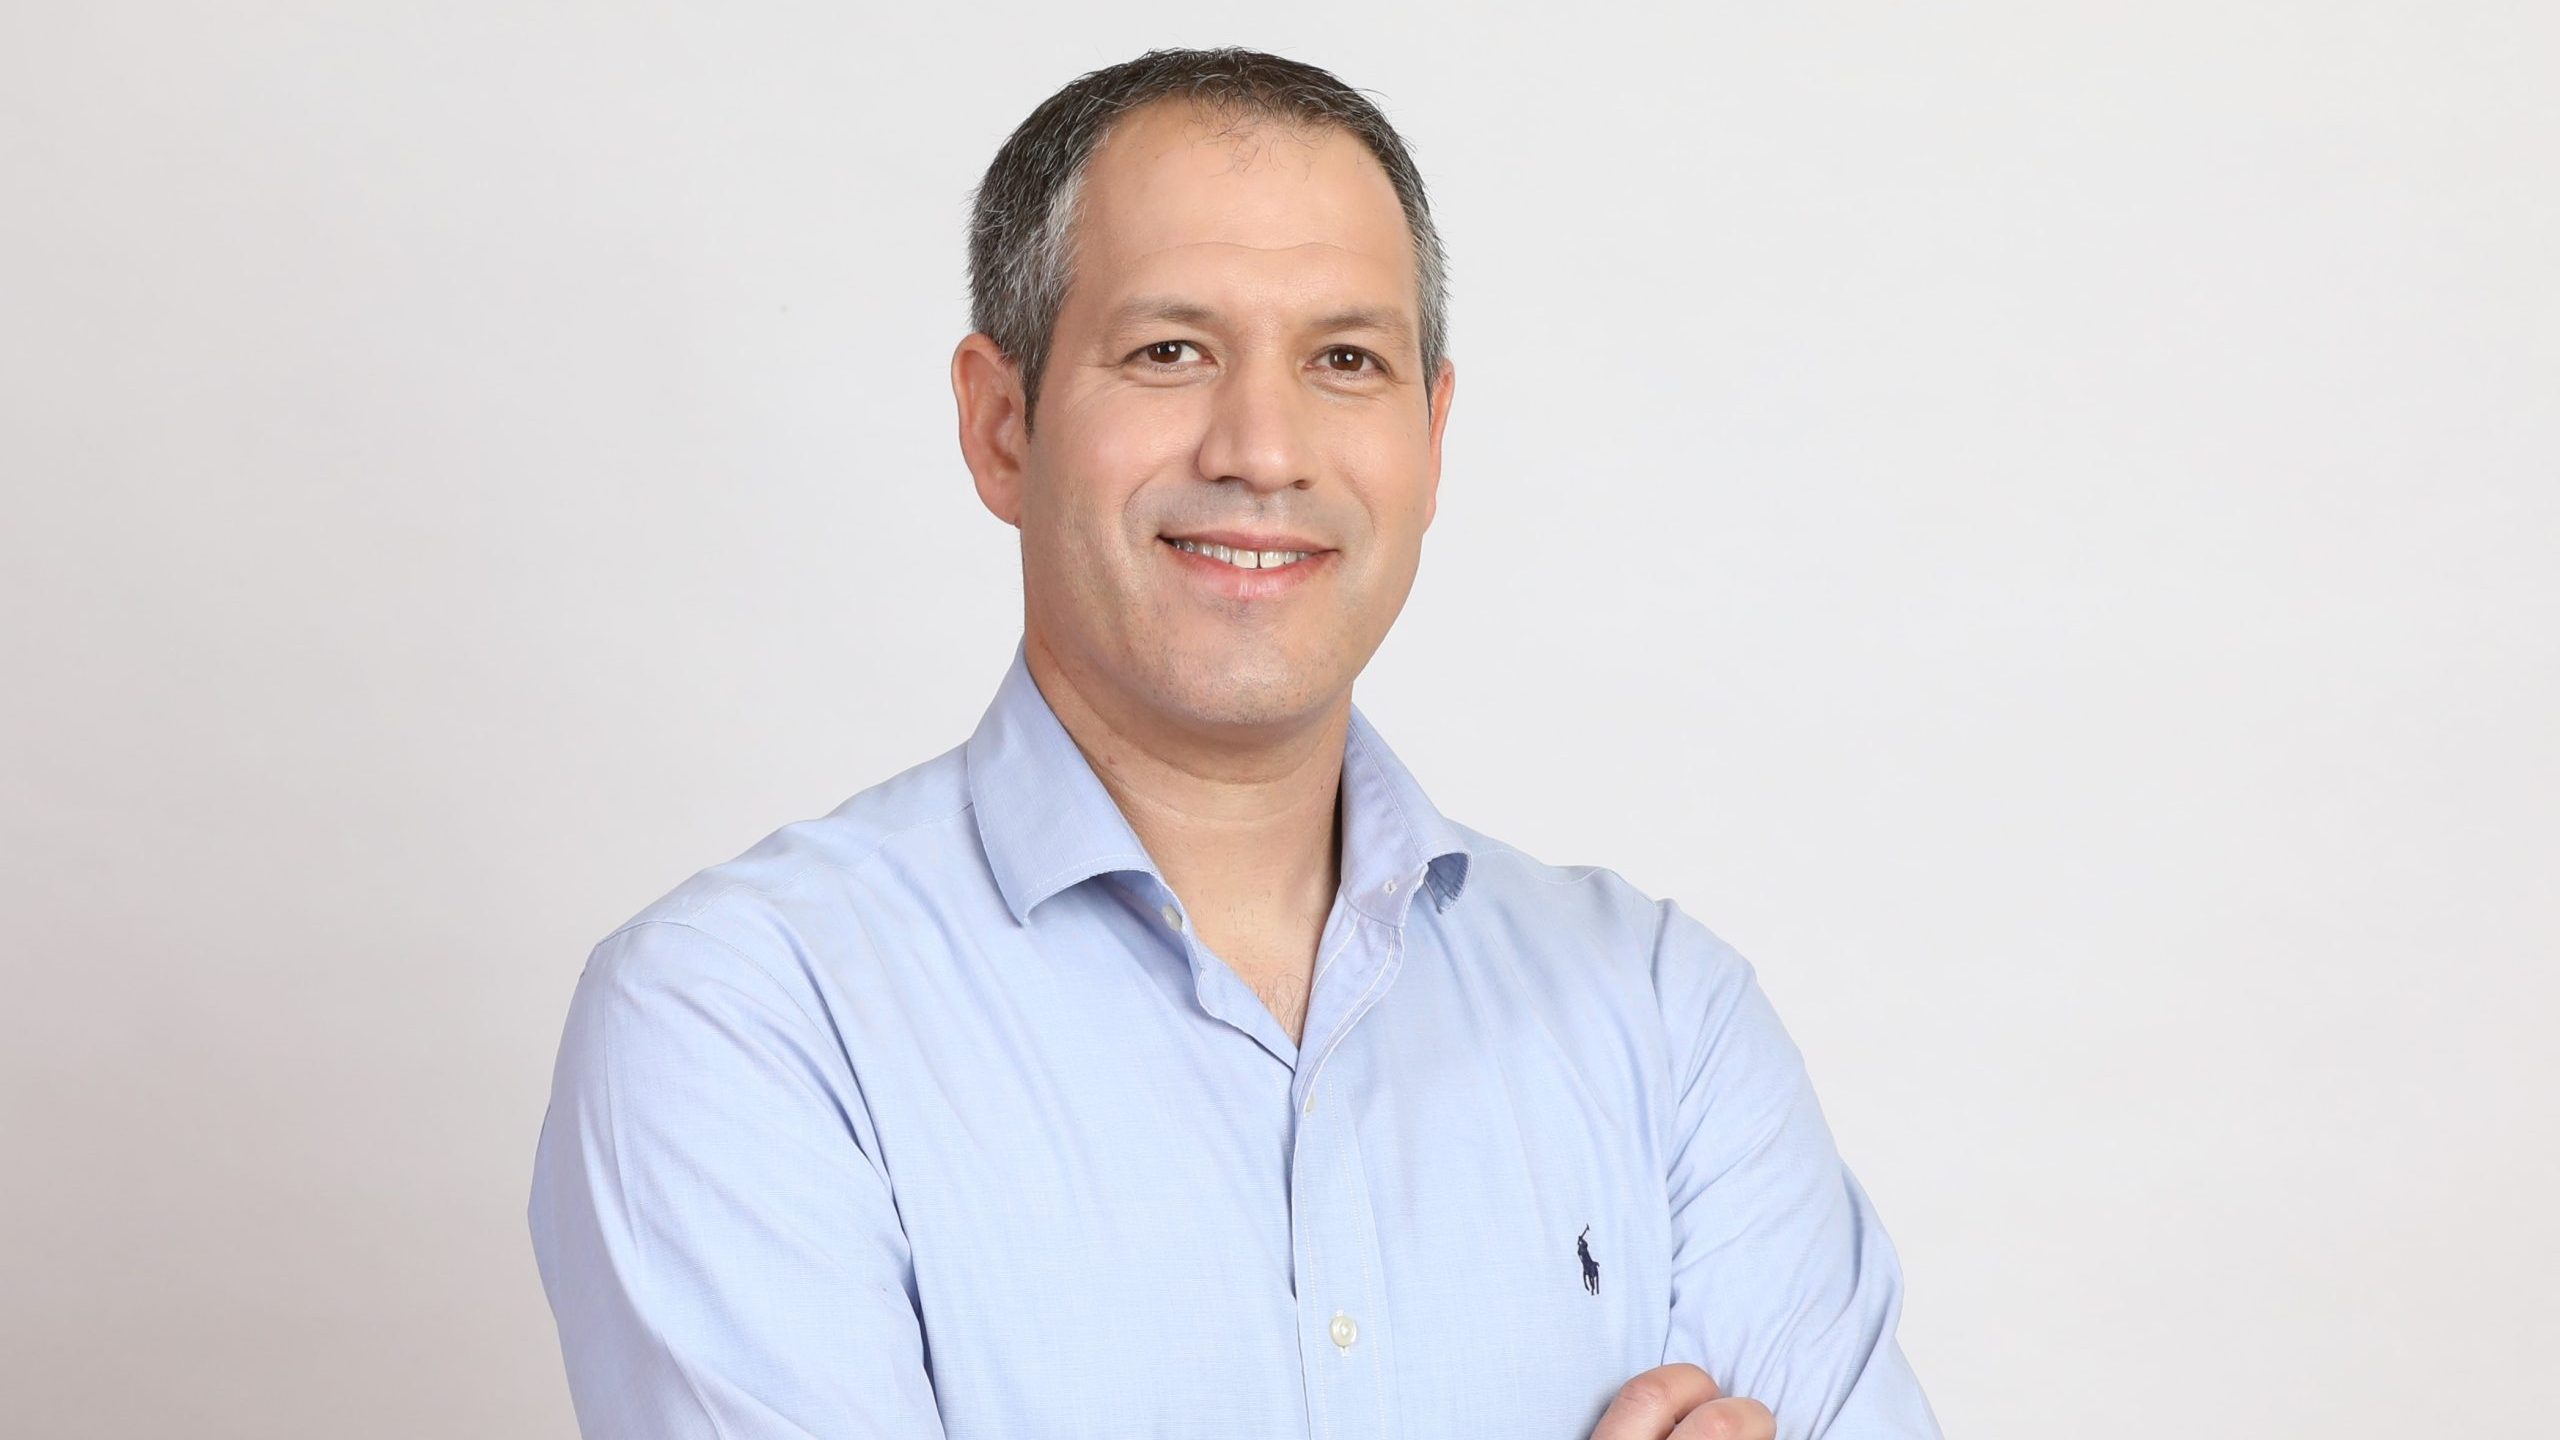 מיכאל בנוולגי, מנהל ההשקעות הראשי של הראל פיננסים, מונה למנכ"ל חברת ניהול התיקים של הראל